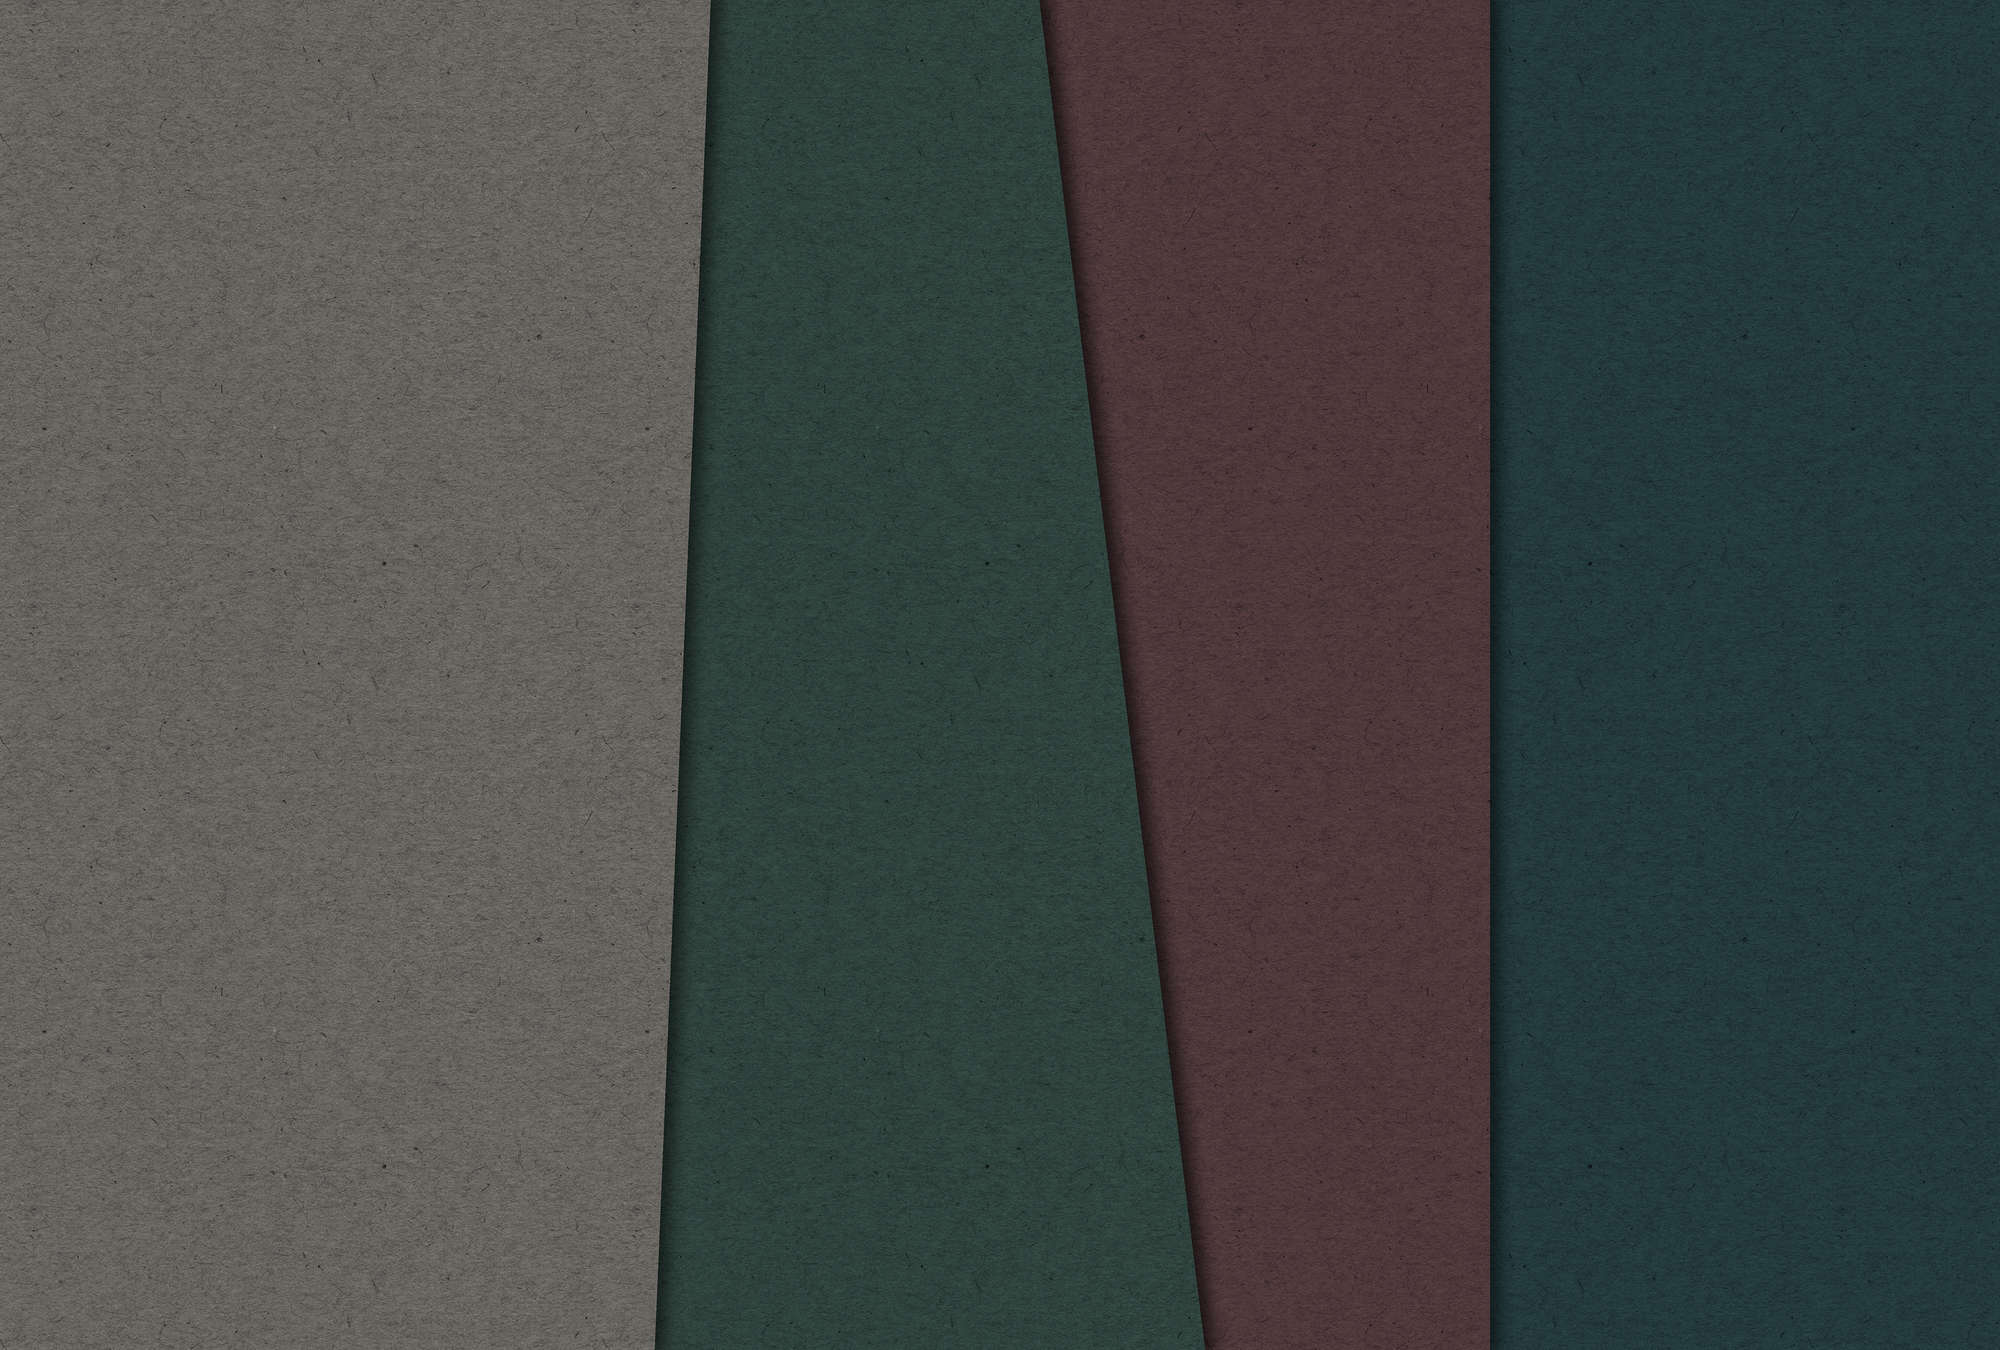             Cartón estratificado 1 - Fotomural con zonas de color oscuro en estructura de cartón - Marrón, Verde | Vellón liso Premium
        